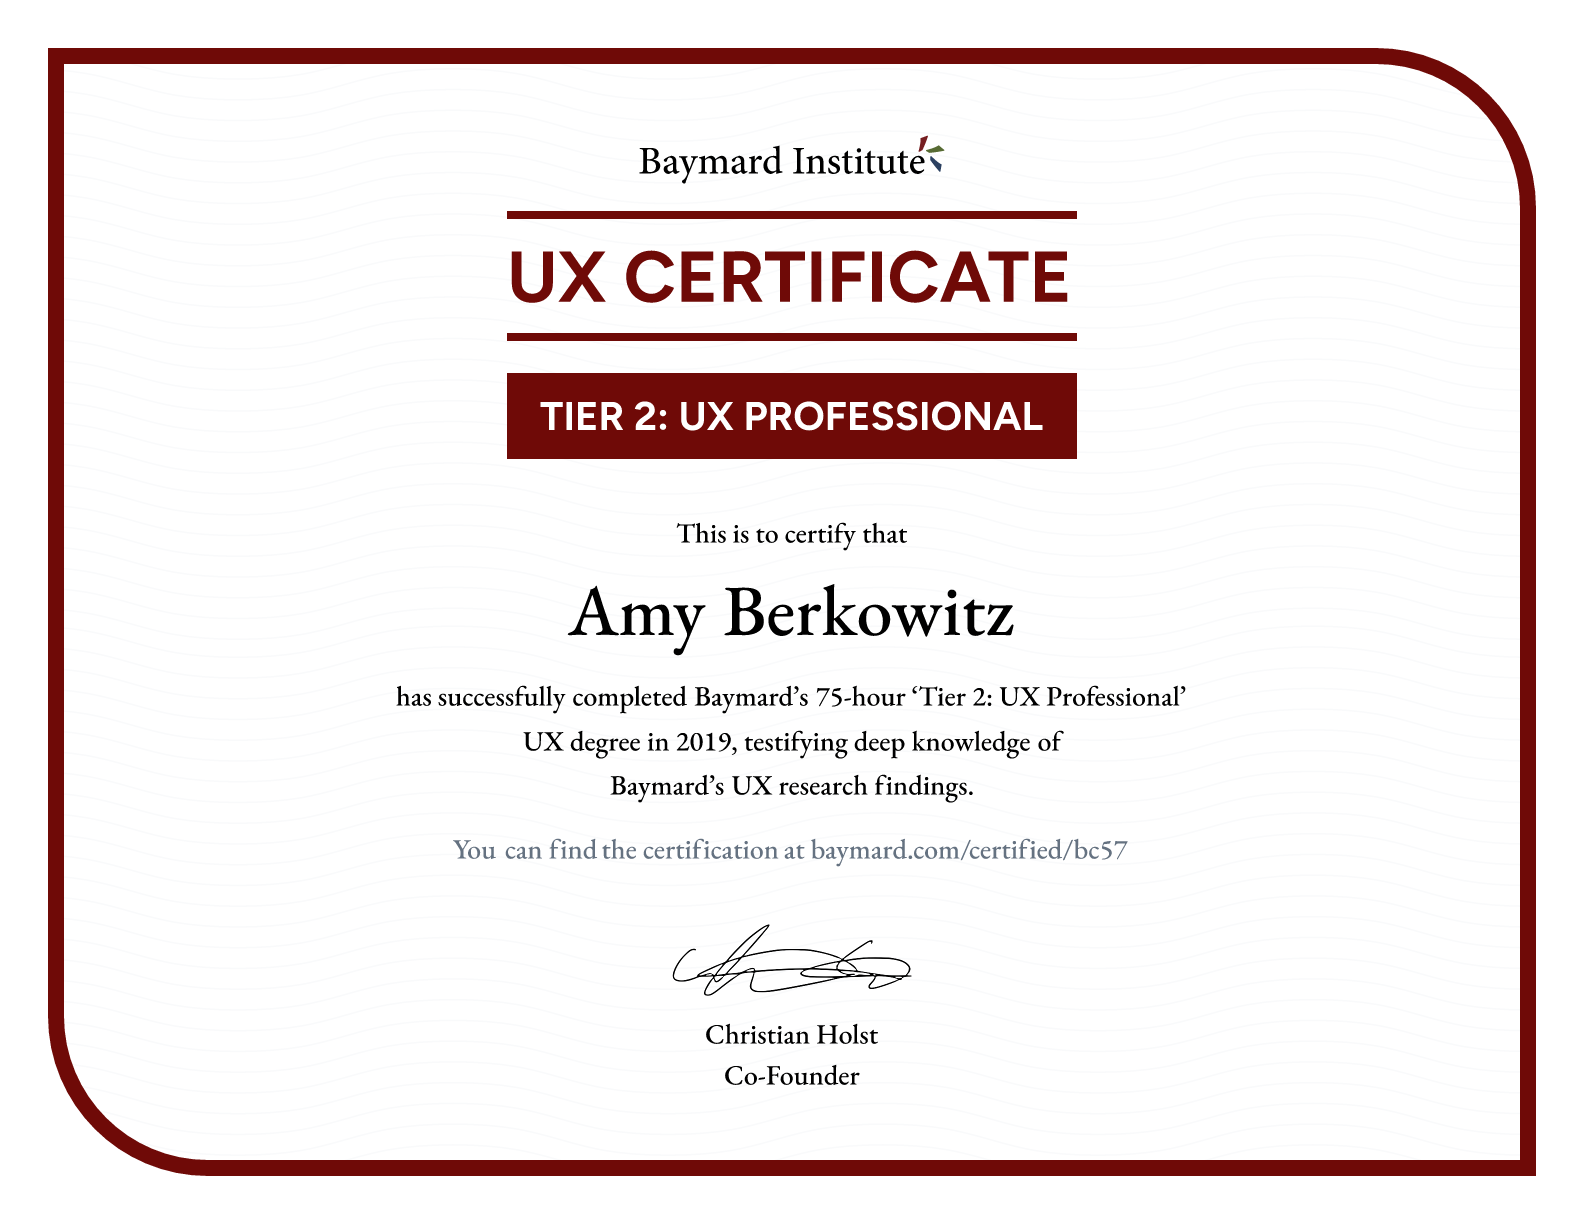 Amy Berkowitz’s certificate